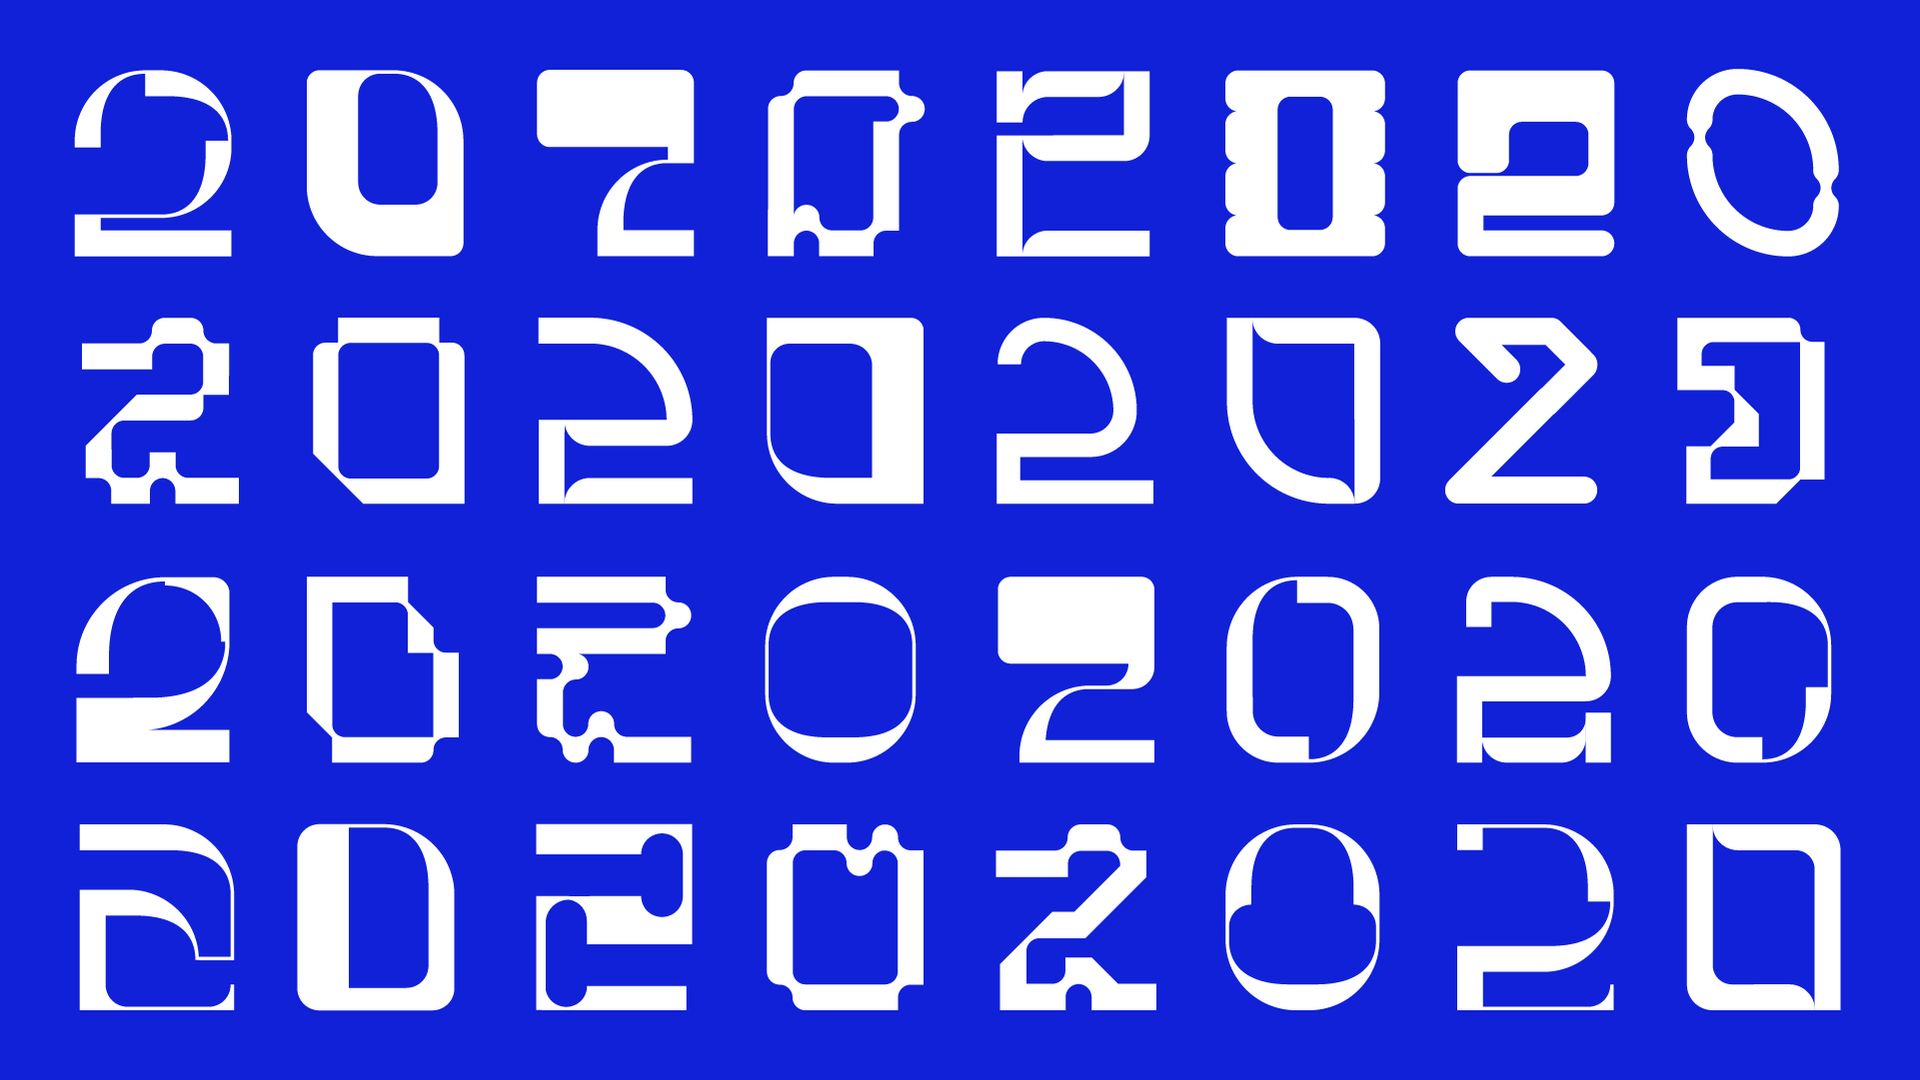 RCA2020 Logos